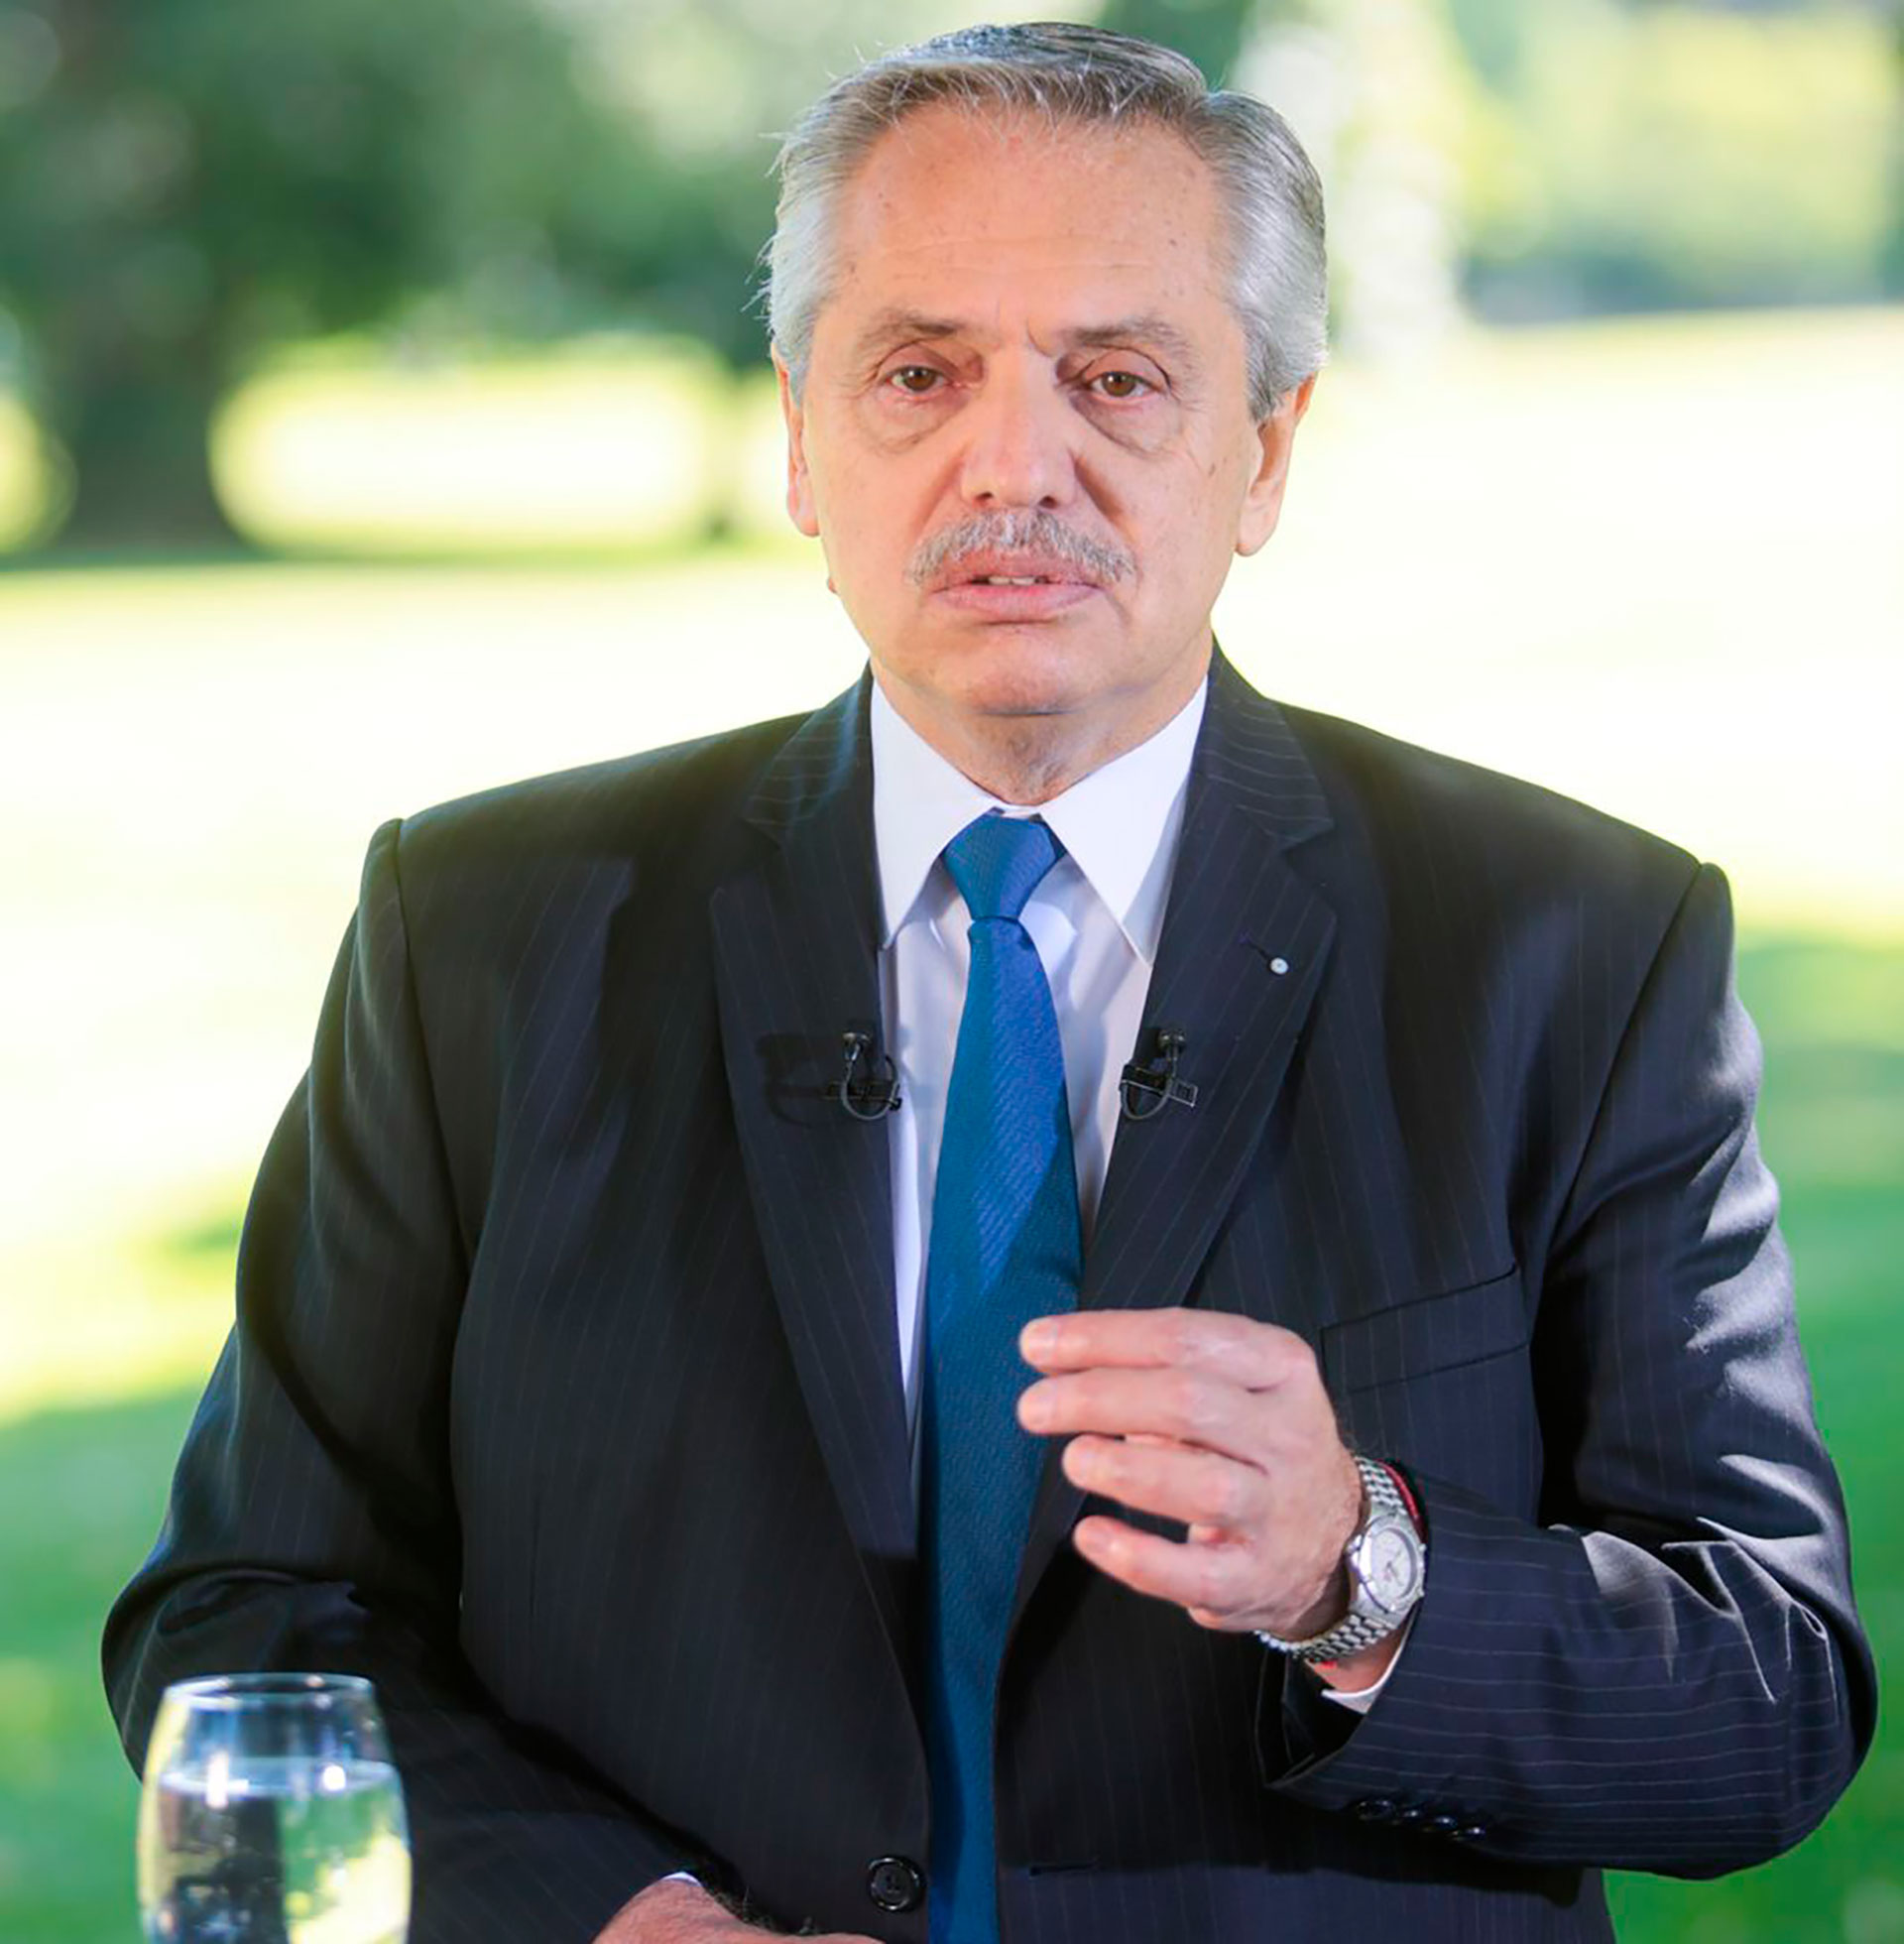 El Presidente durante la grabación del discurso en la Quinta de Olivos 